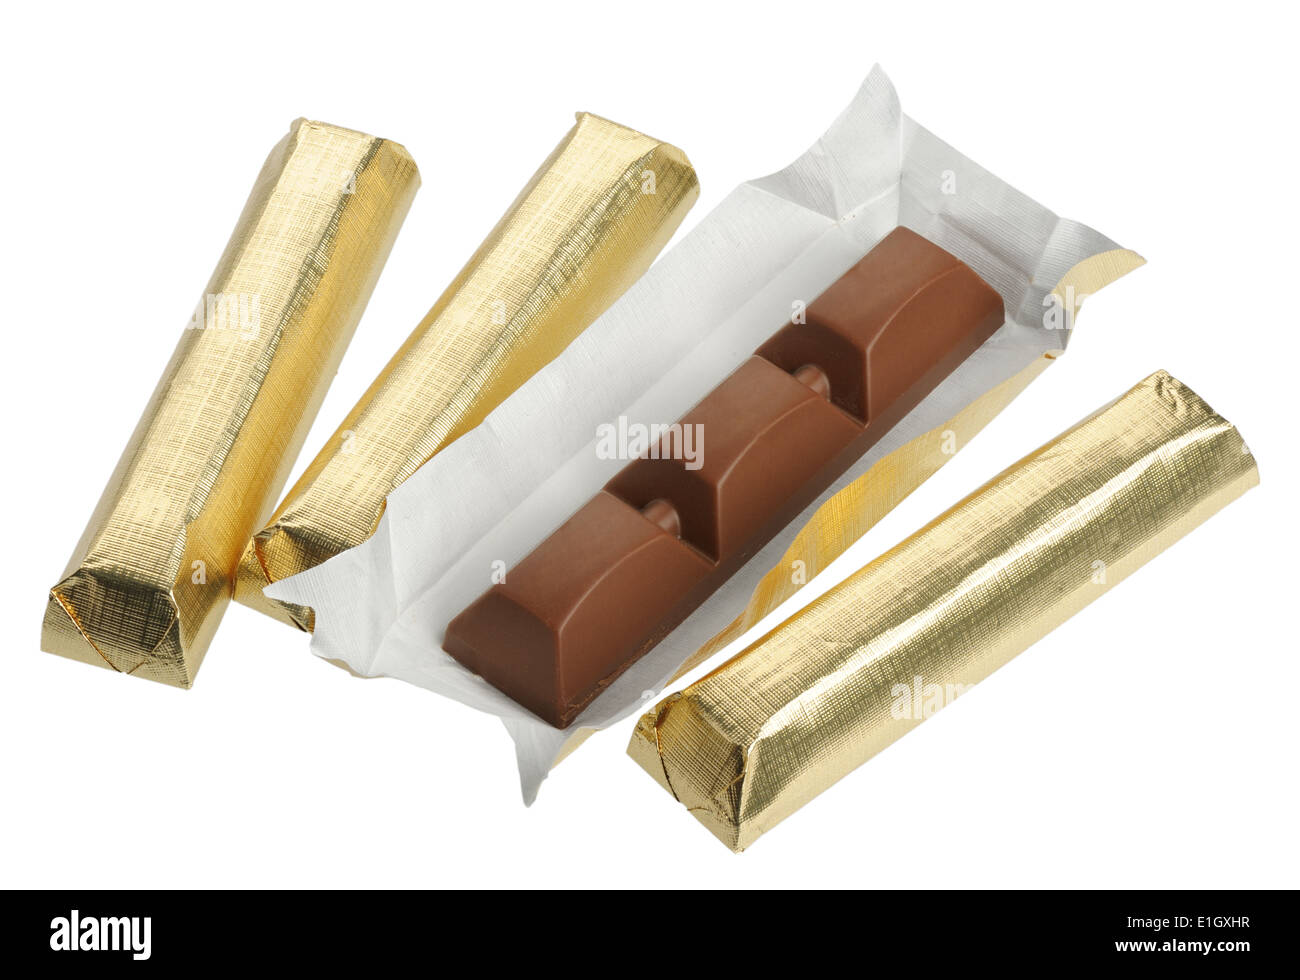 chocolate gold bar